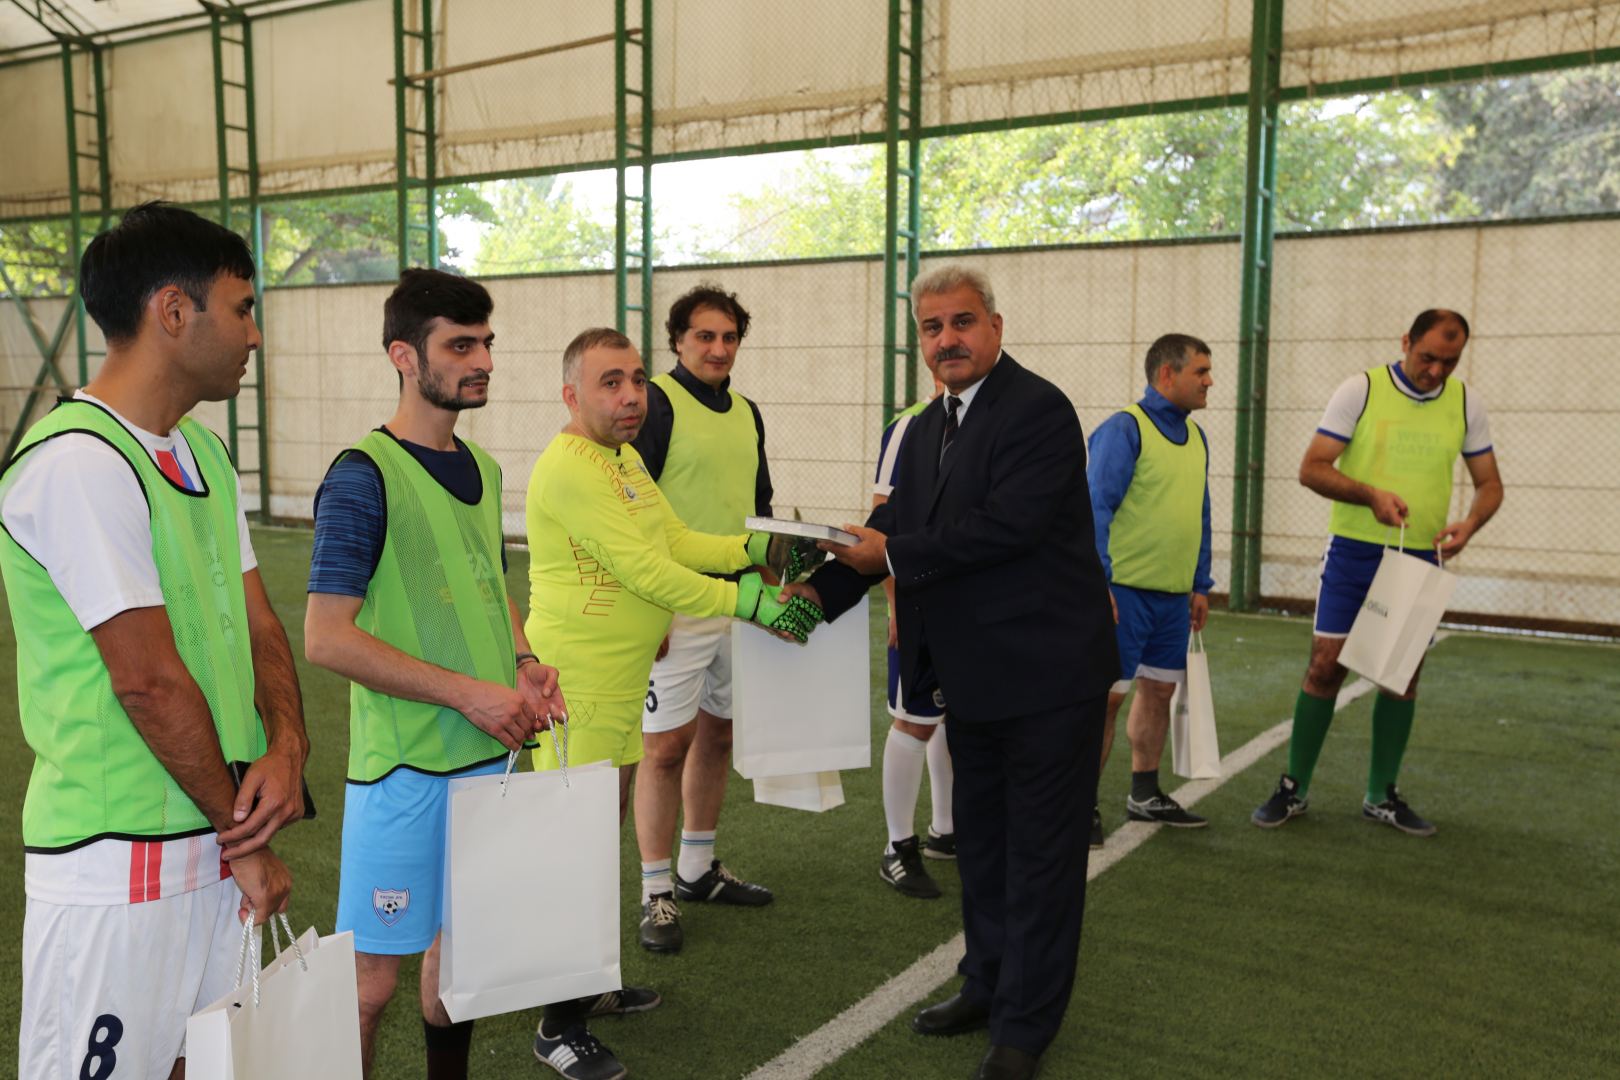 Футбольный матч закончился со счетом 4:4. Посвящается Победе в Карабахской войне (ФОТО)